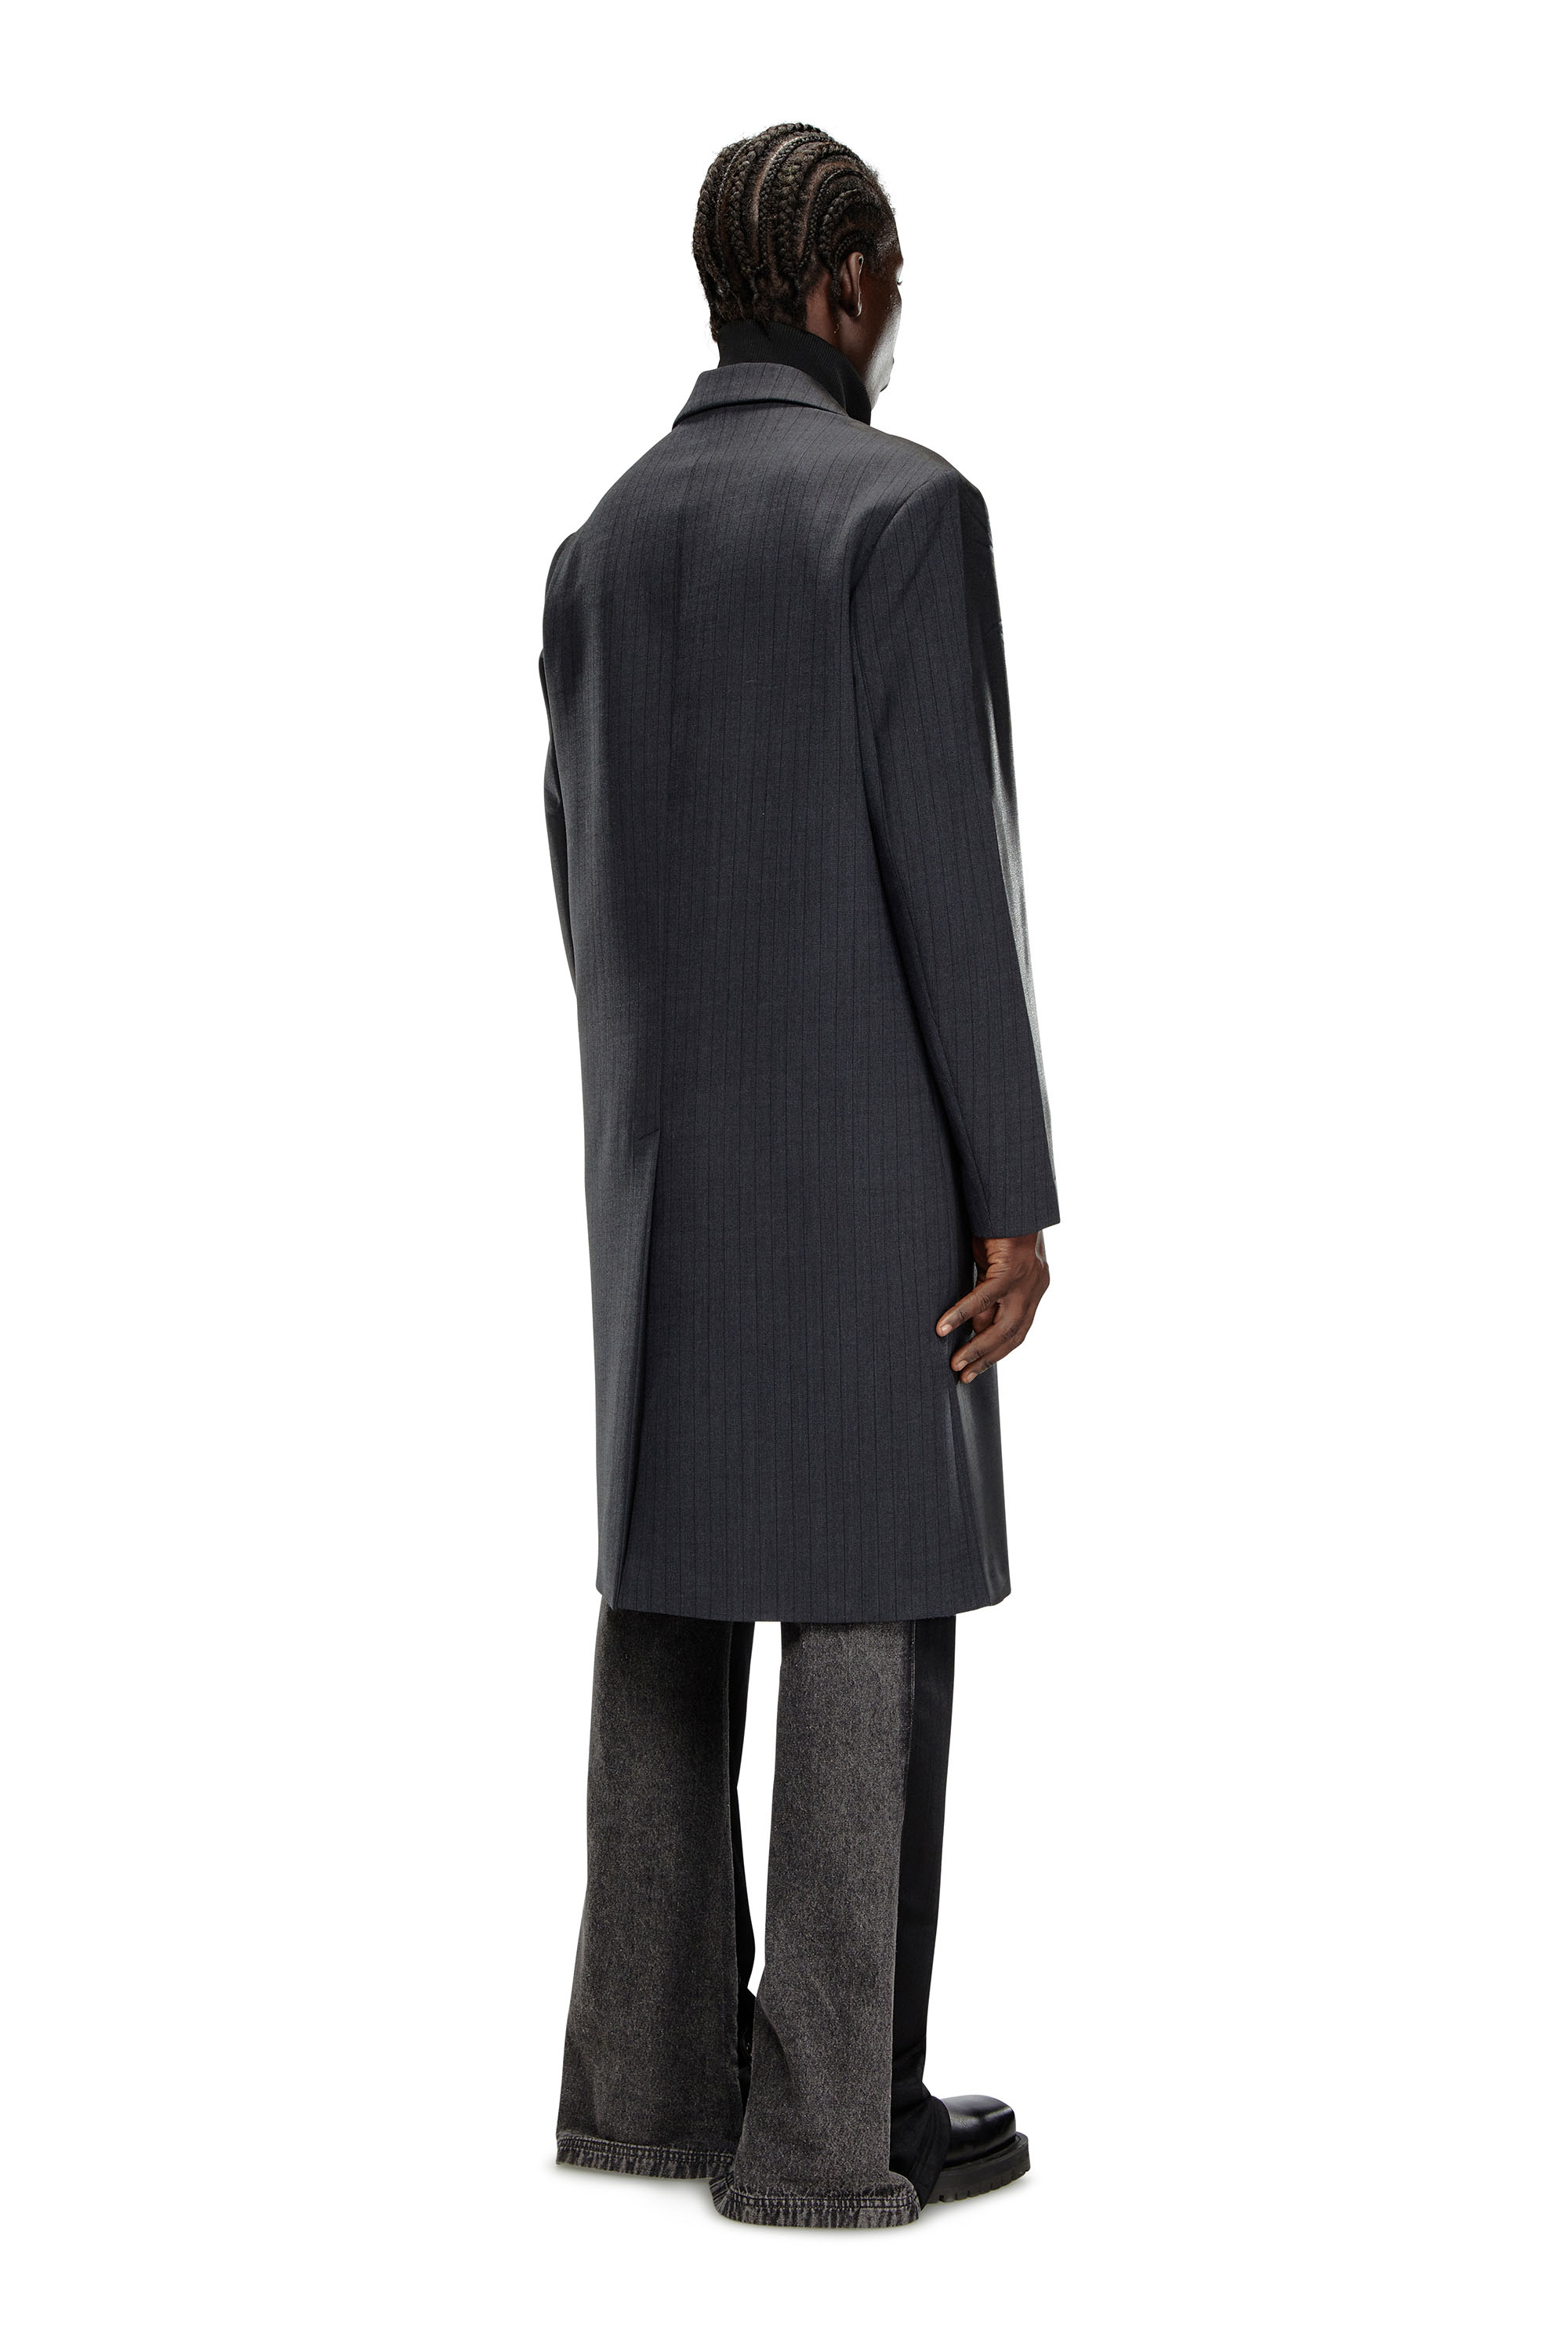 Diesel - J-DENNER, Man Coat in pinstriped cool wool in Black - Image 4